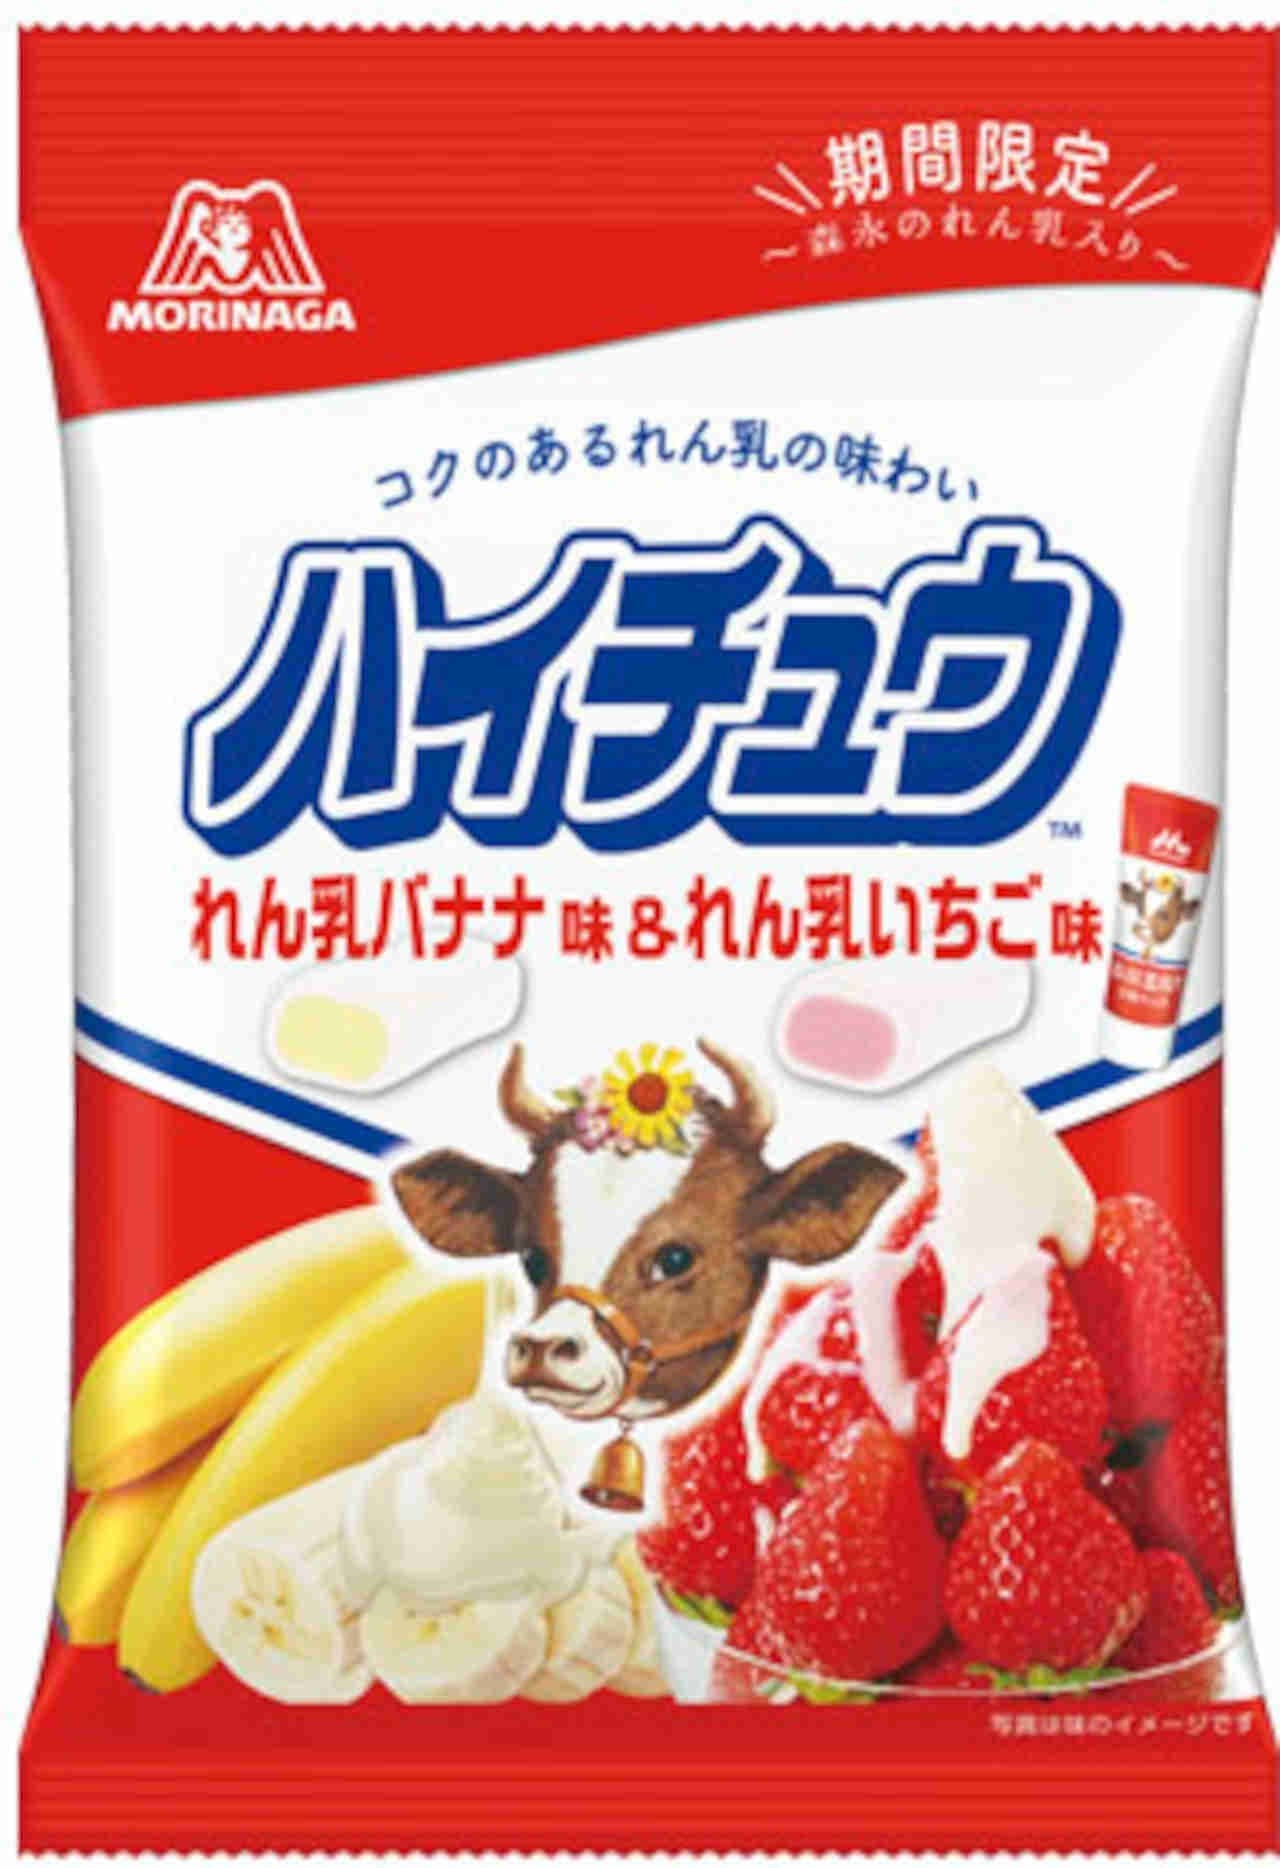 Collaboration between Morinaga Seika and Morinaga Milk Industry